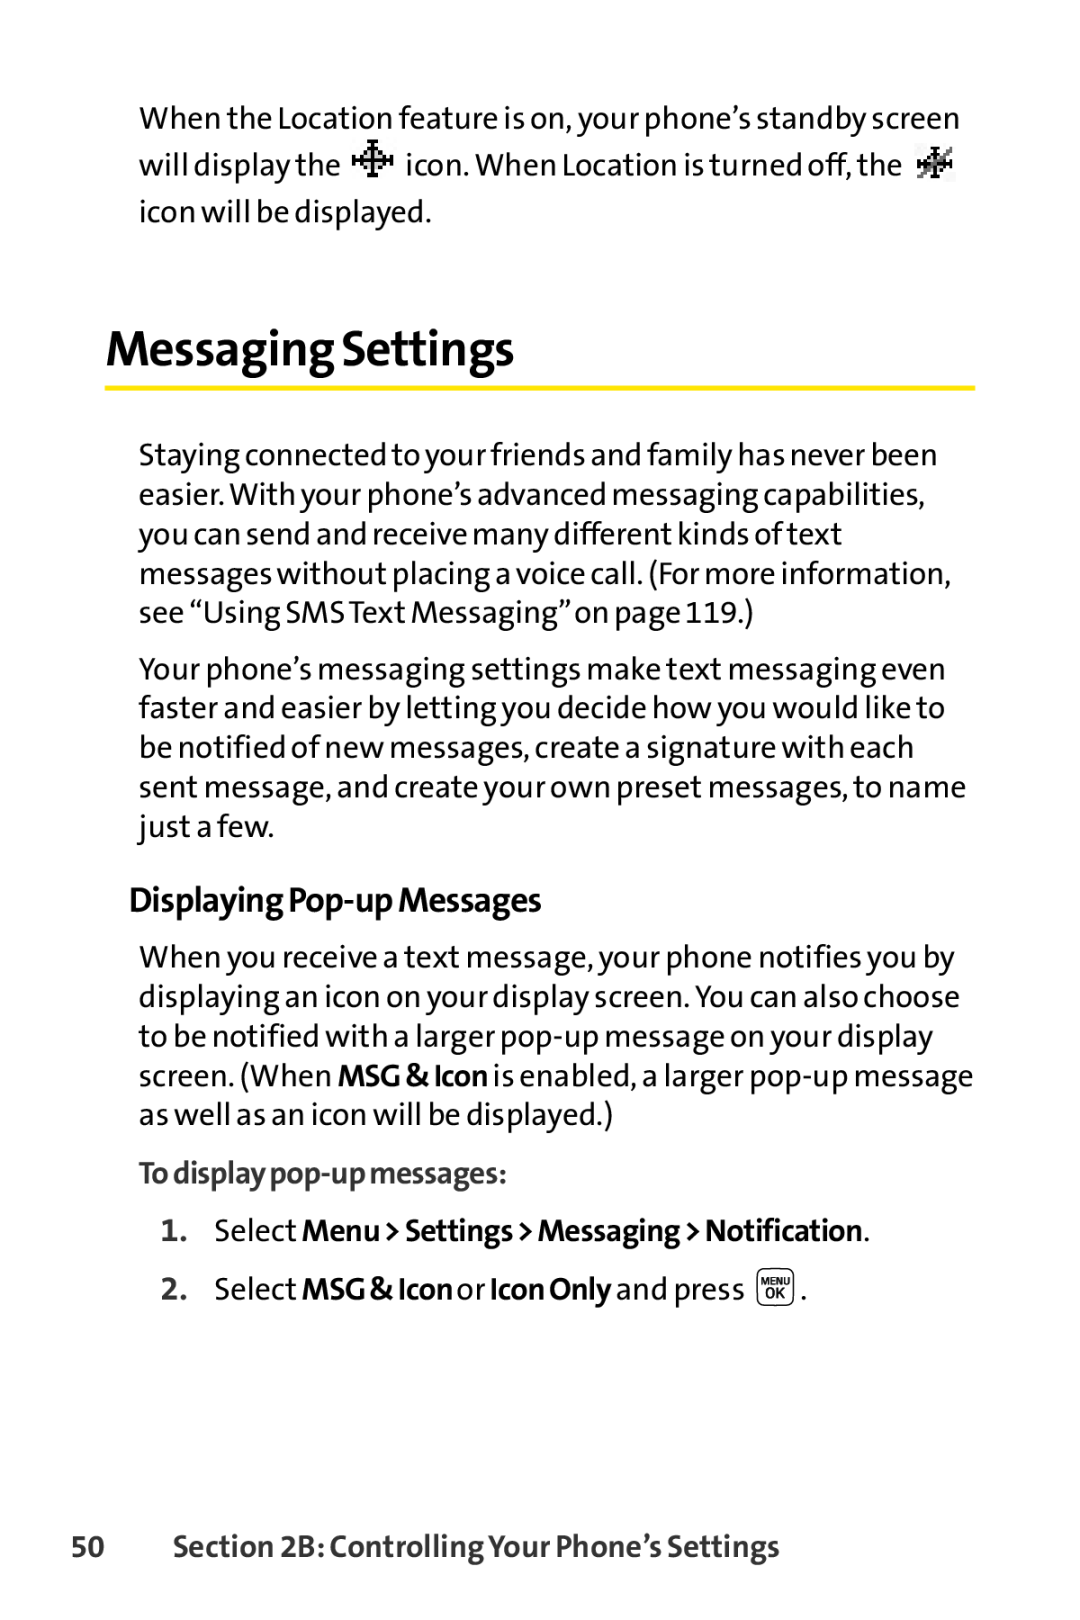 Sprint Nextel LX160 manual Messaging Settings, DisplayingPop-upMessages, Todisplaypop-upmessages 